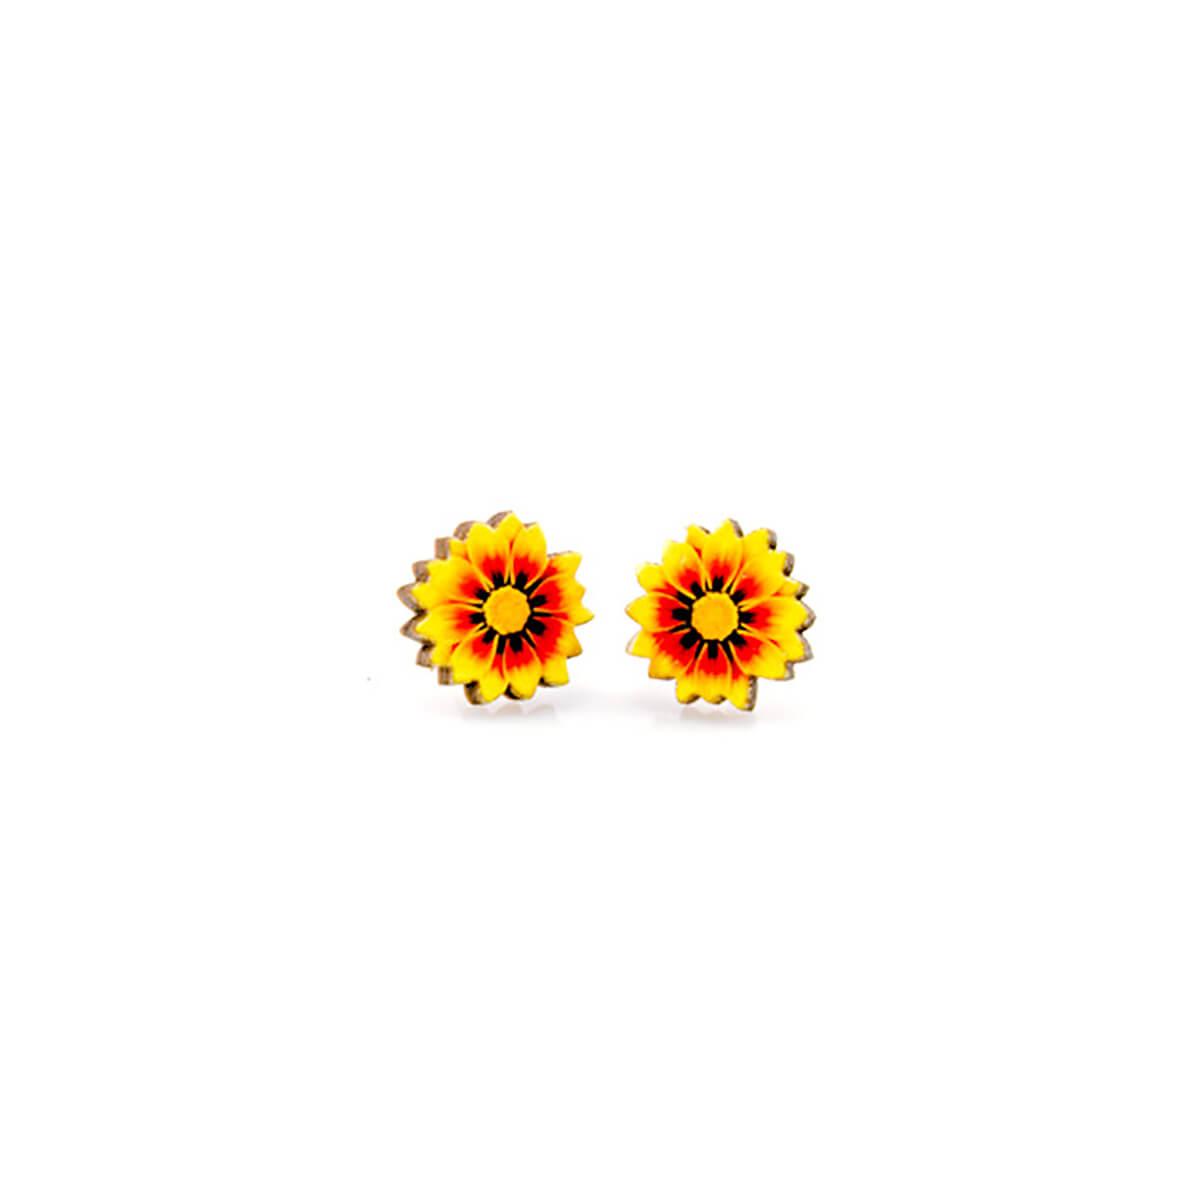  Fire Wheel Flower Stud Earrings